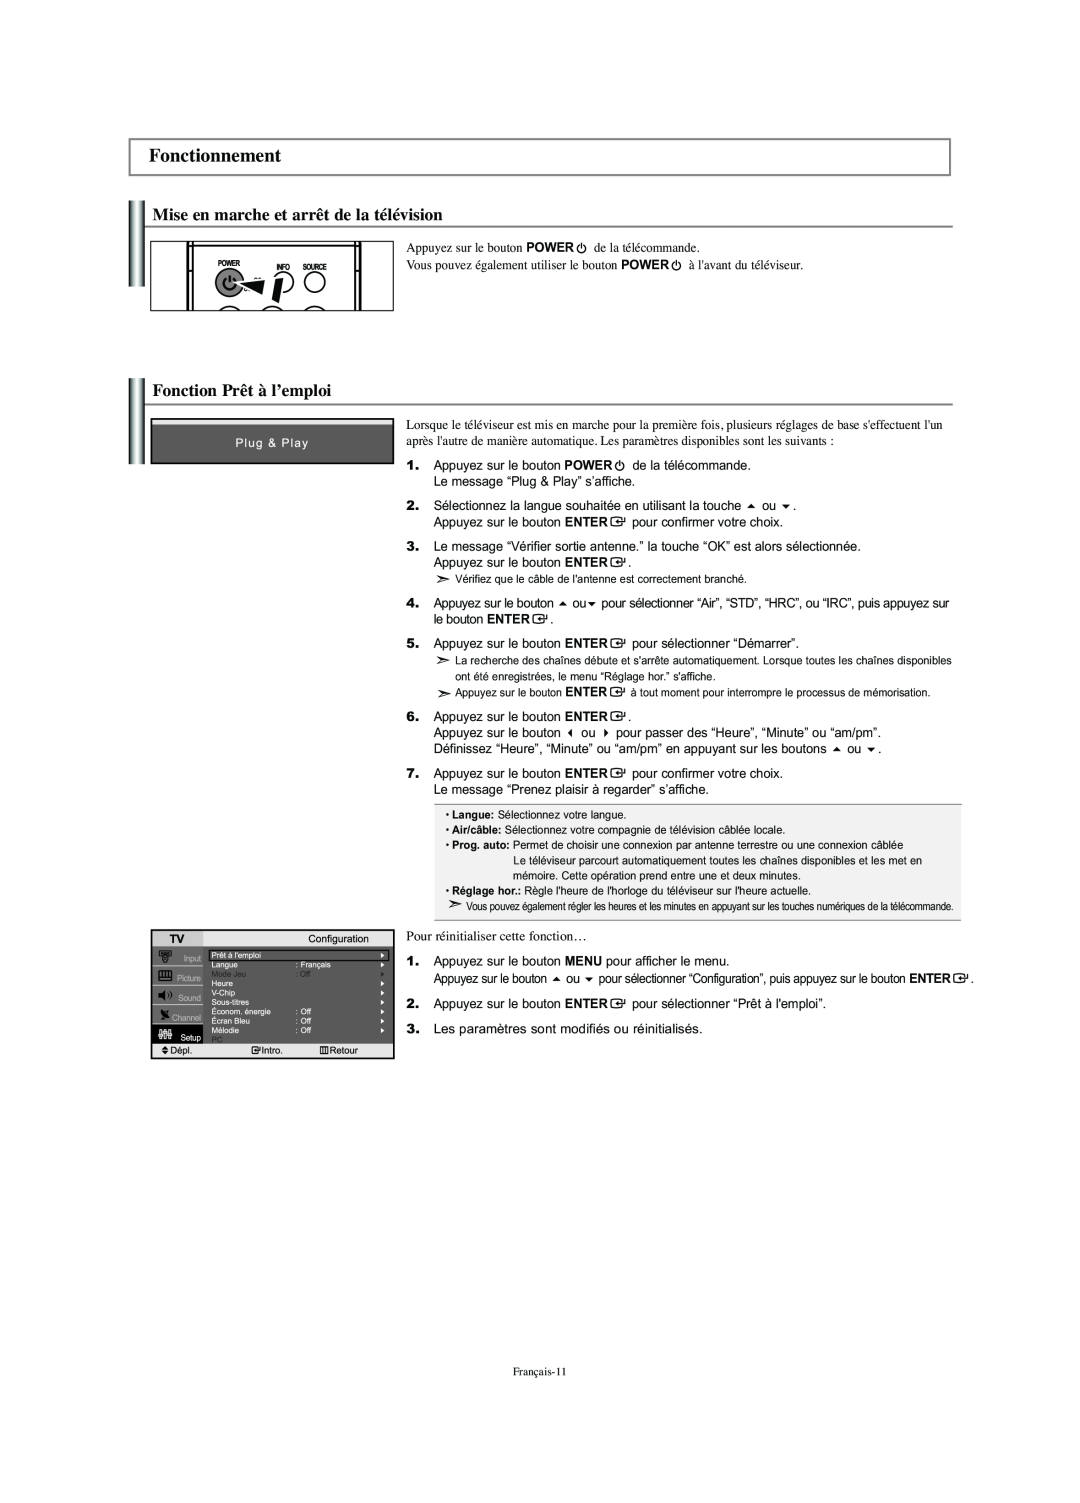 Samsung LN-S2341W manual Fonctionnement, Mise en marche et arrêt de la télévision, Fonction Prêt à l’emploi 